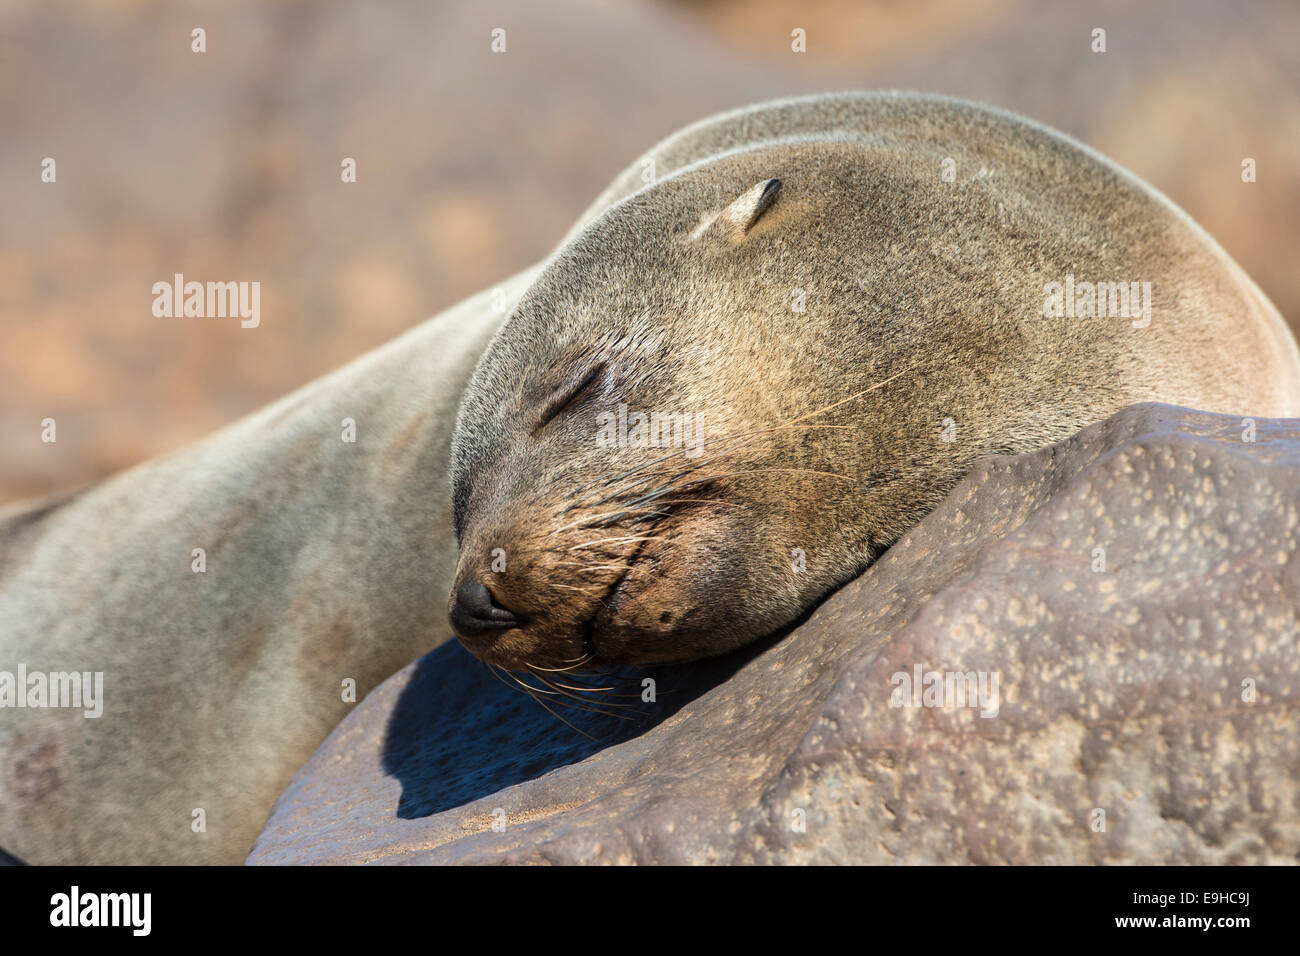 L'Afrique du Sud (Cape fur seal) sommeil (Arctocephalus pusillus pusillus), Cape Cross colonie de reproduction, la Namibie Banque D'Images